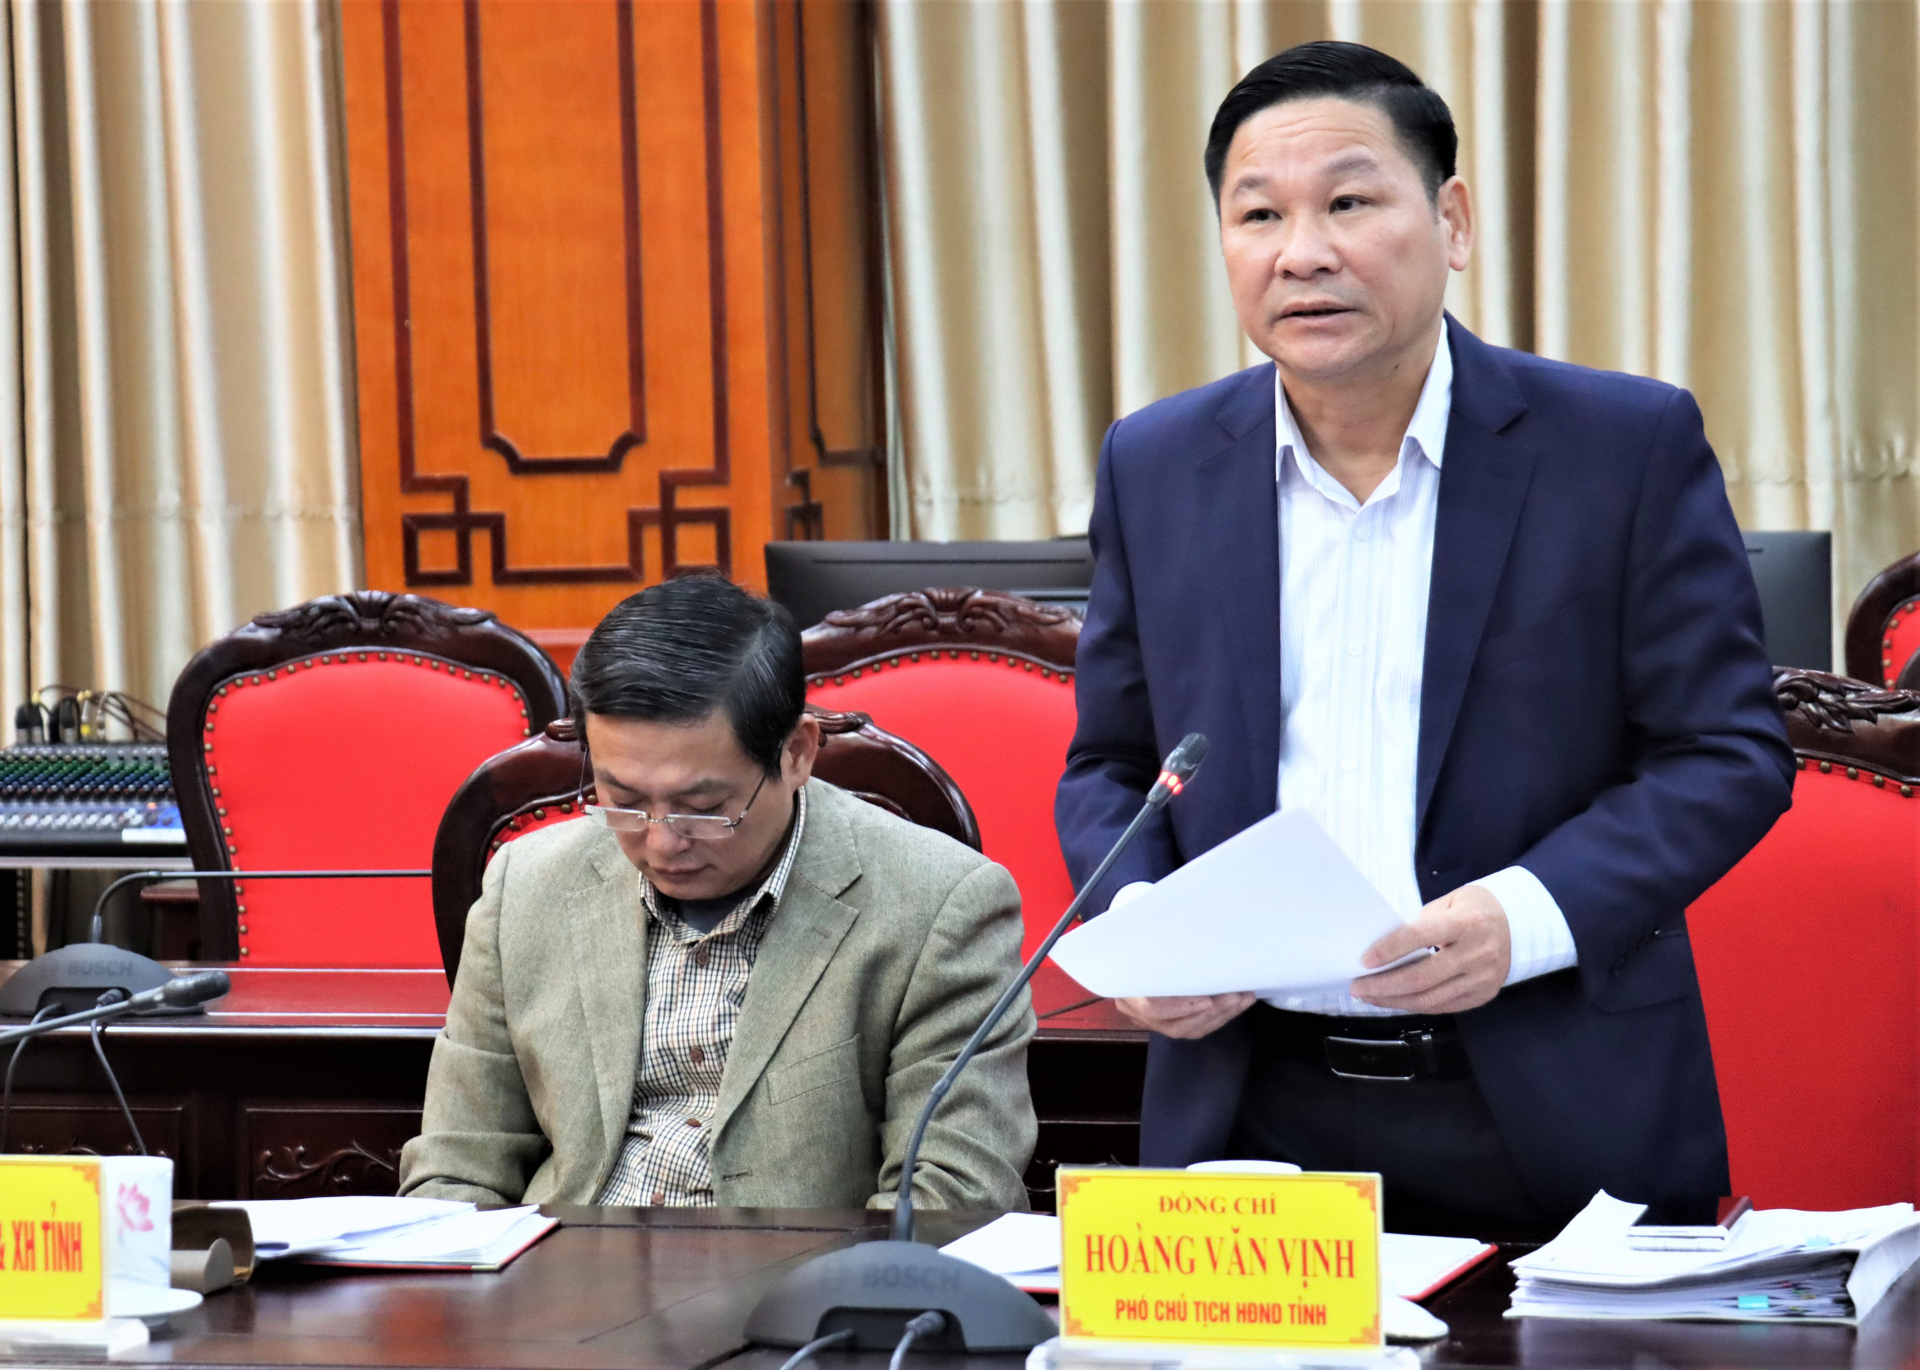 Phó Chủ tịch HĐND tỉnh Hoàng văn Vịnh phát biểu tại buổi làm việc.
